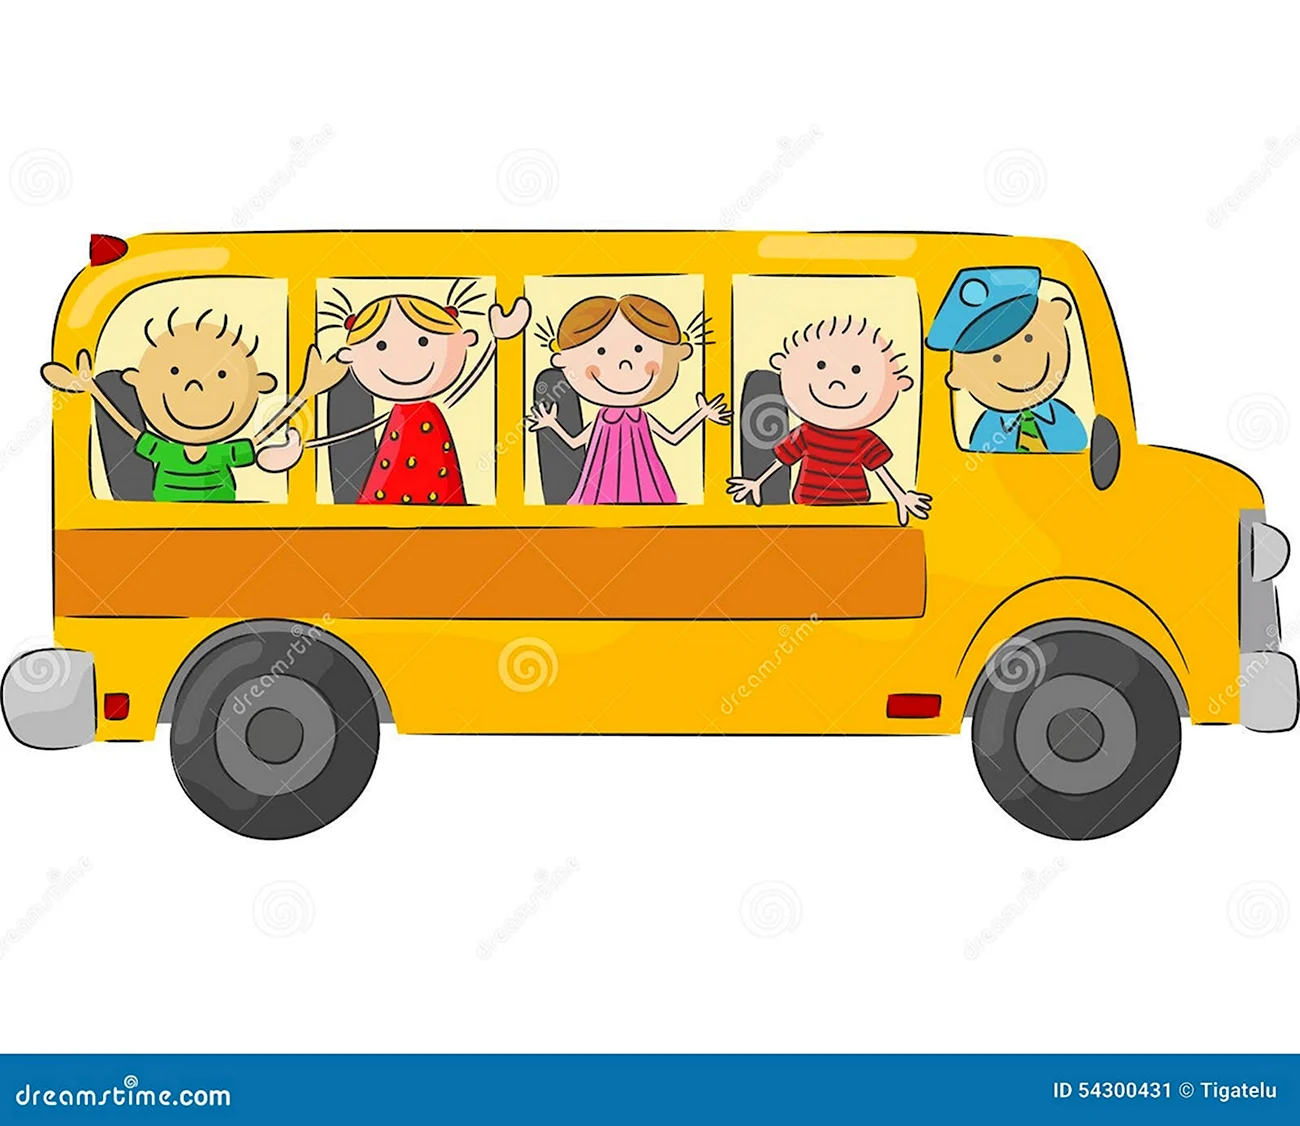 Дети пассажиры автобуса. Картинка